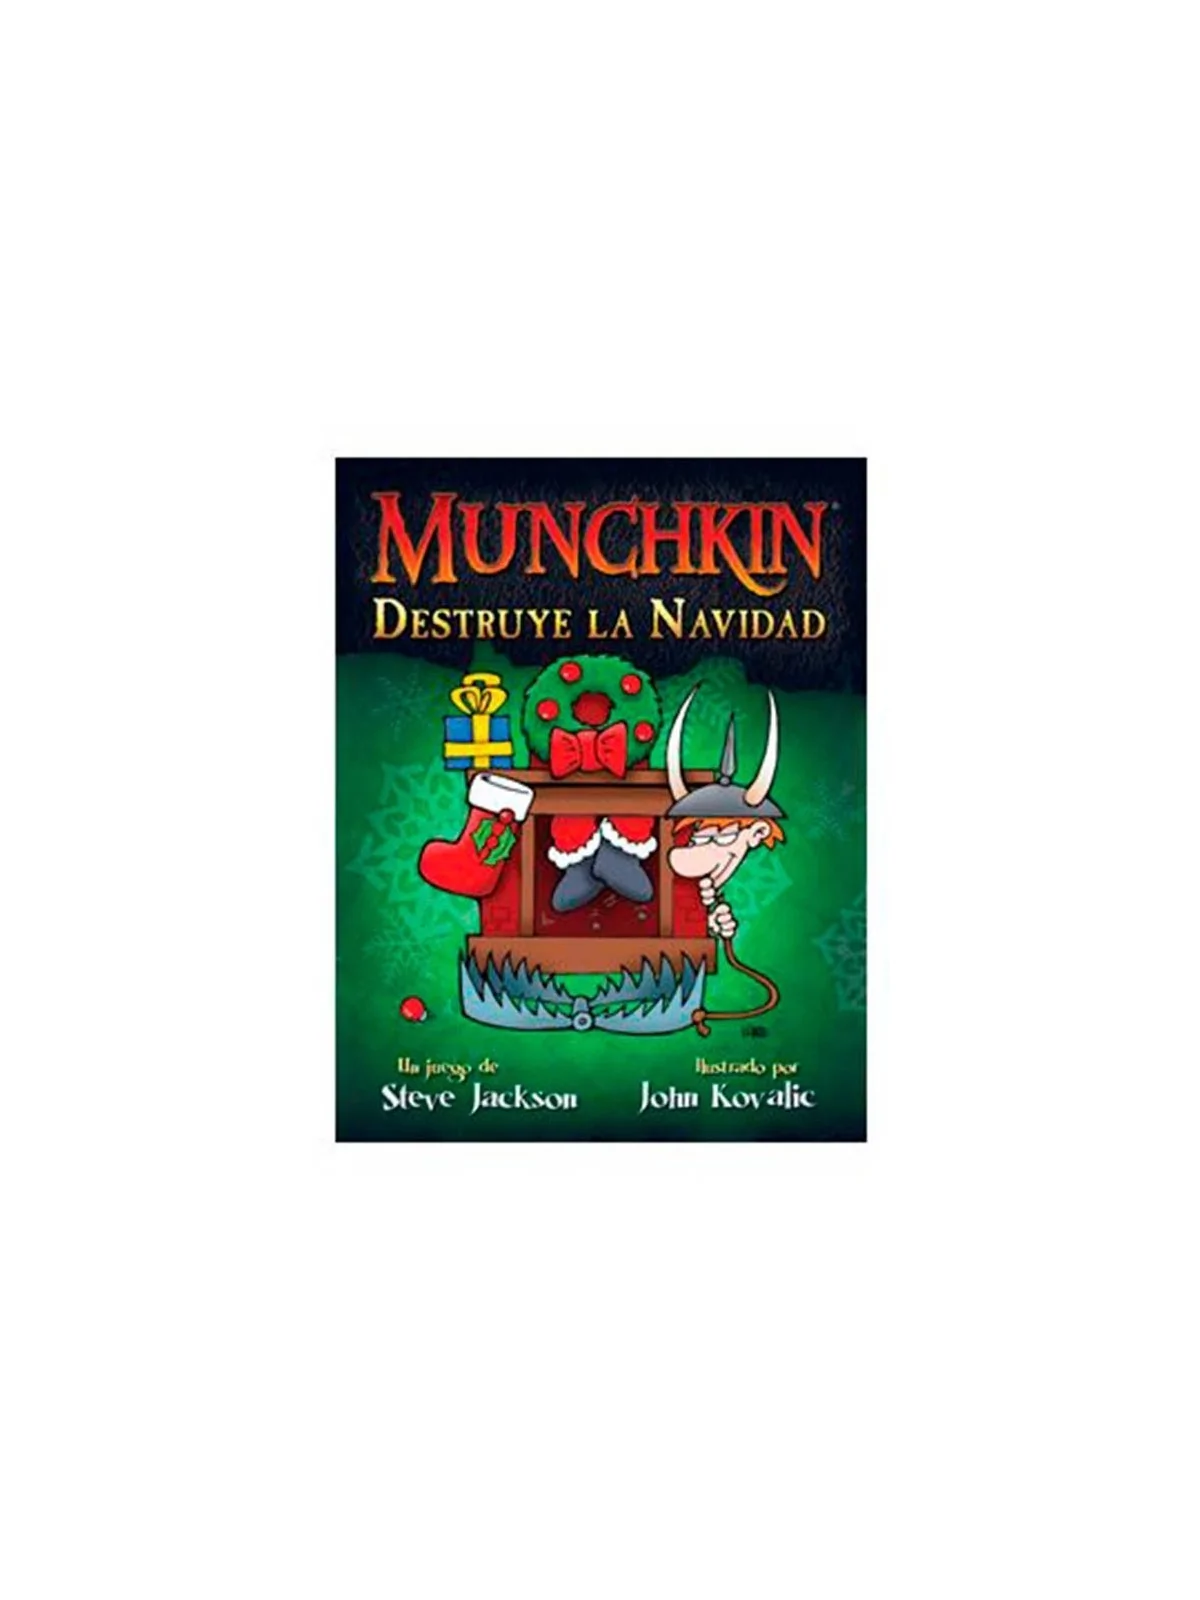 Comprar Munchkin: Destruye la Navidad barato al mejor precio 9,89 € de